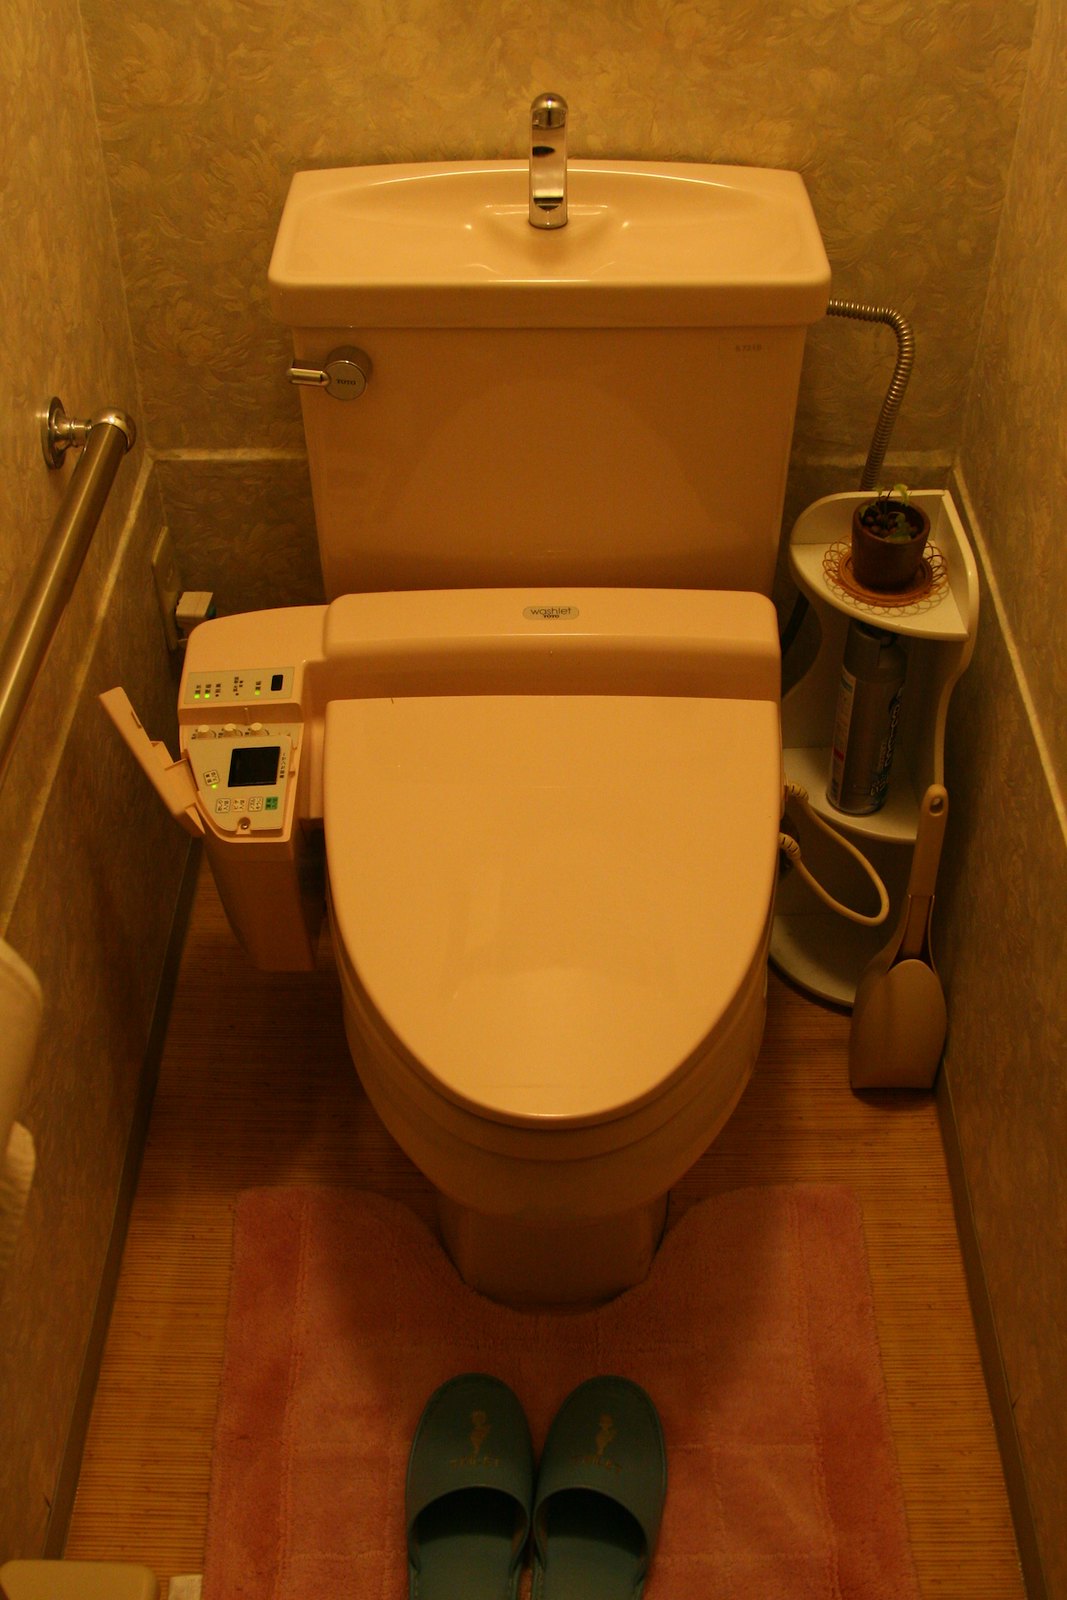 Future Toilet